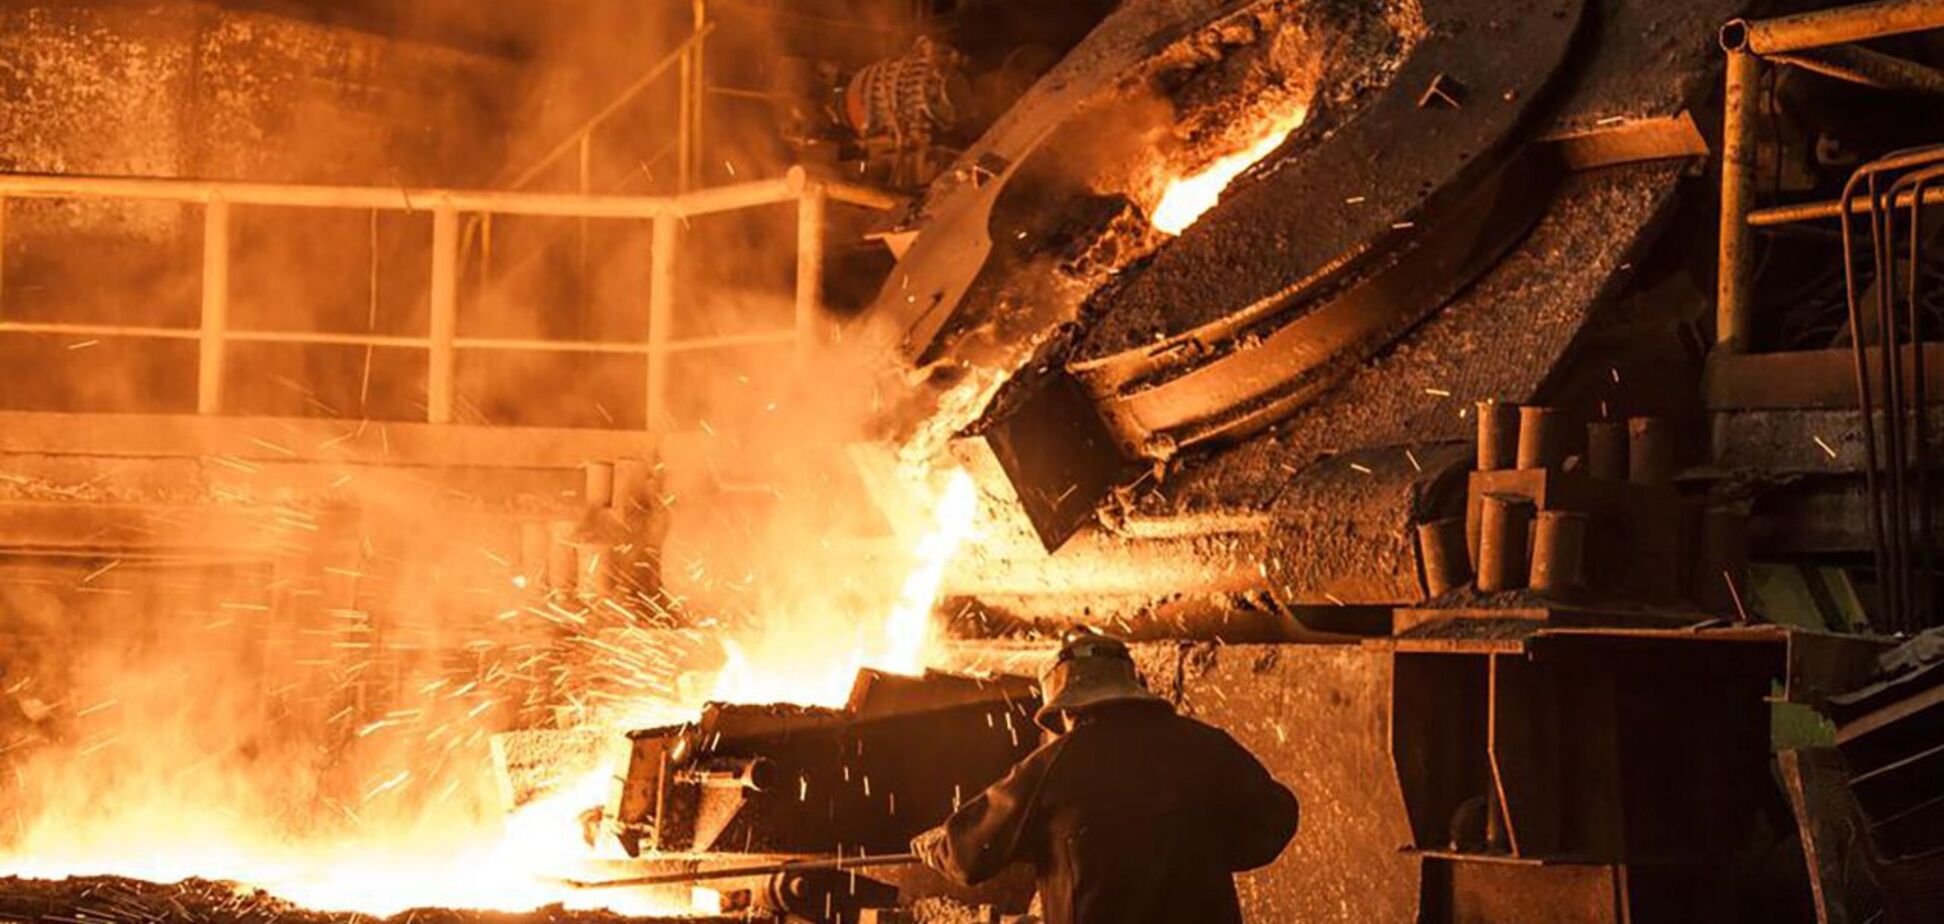 Українські металовиробники повинні вести власний моніторинг ринку